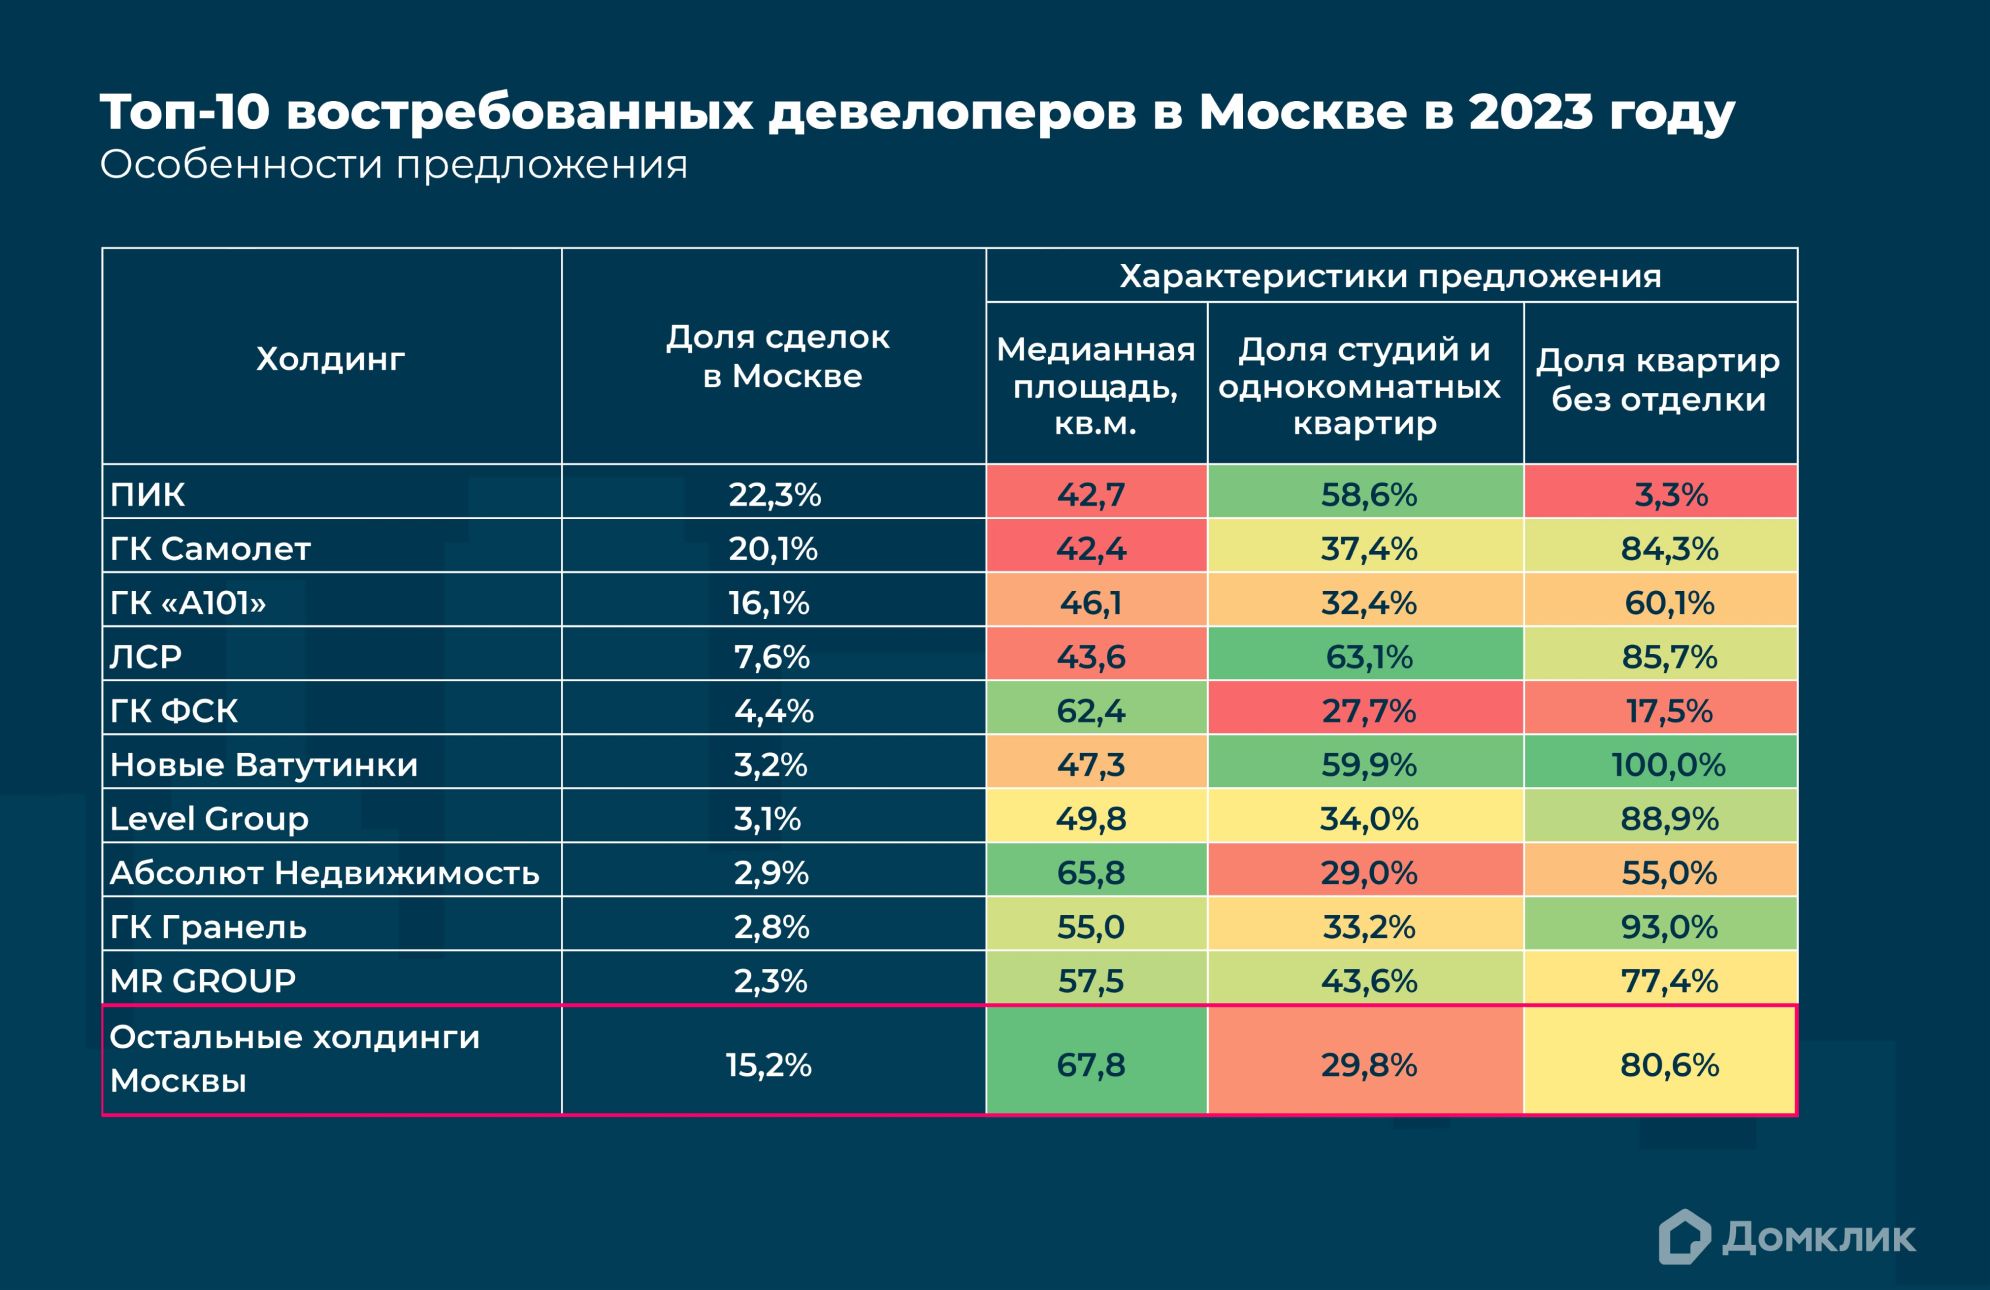 Топ-10 холдингов Москвы по количеству проведенных сделок в 2023 году. Показаны следующие характеристики предложения: медианная площадь (в кв.м.), процент малогабаритного жилья (студий и однокомнатных квартир), а также доля квартир без отделки. Дополнительно приведены обобщенные данные по остальным застройщикам Москвы. В рамках каждого параметра наименьшие показатели обозначены красным цветом, наибольшие – зеленым. Данные Сбера и Домклик